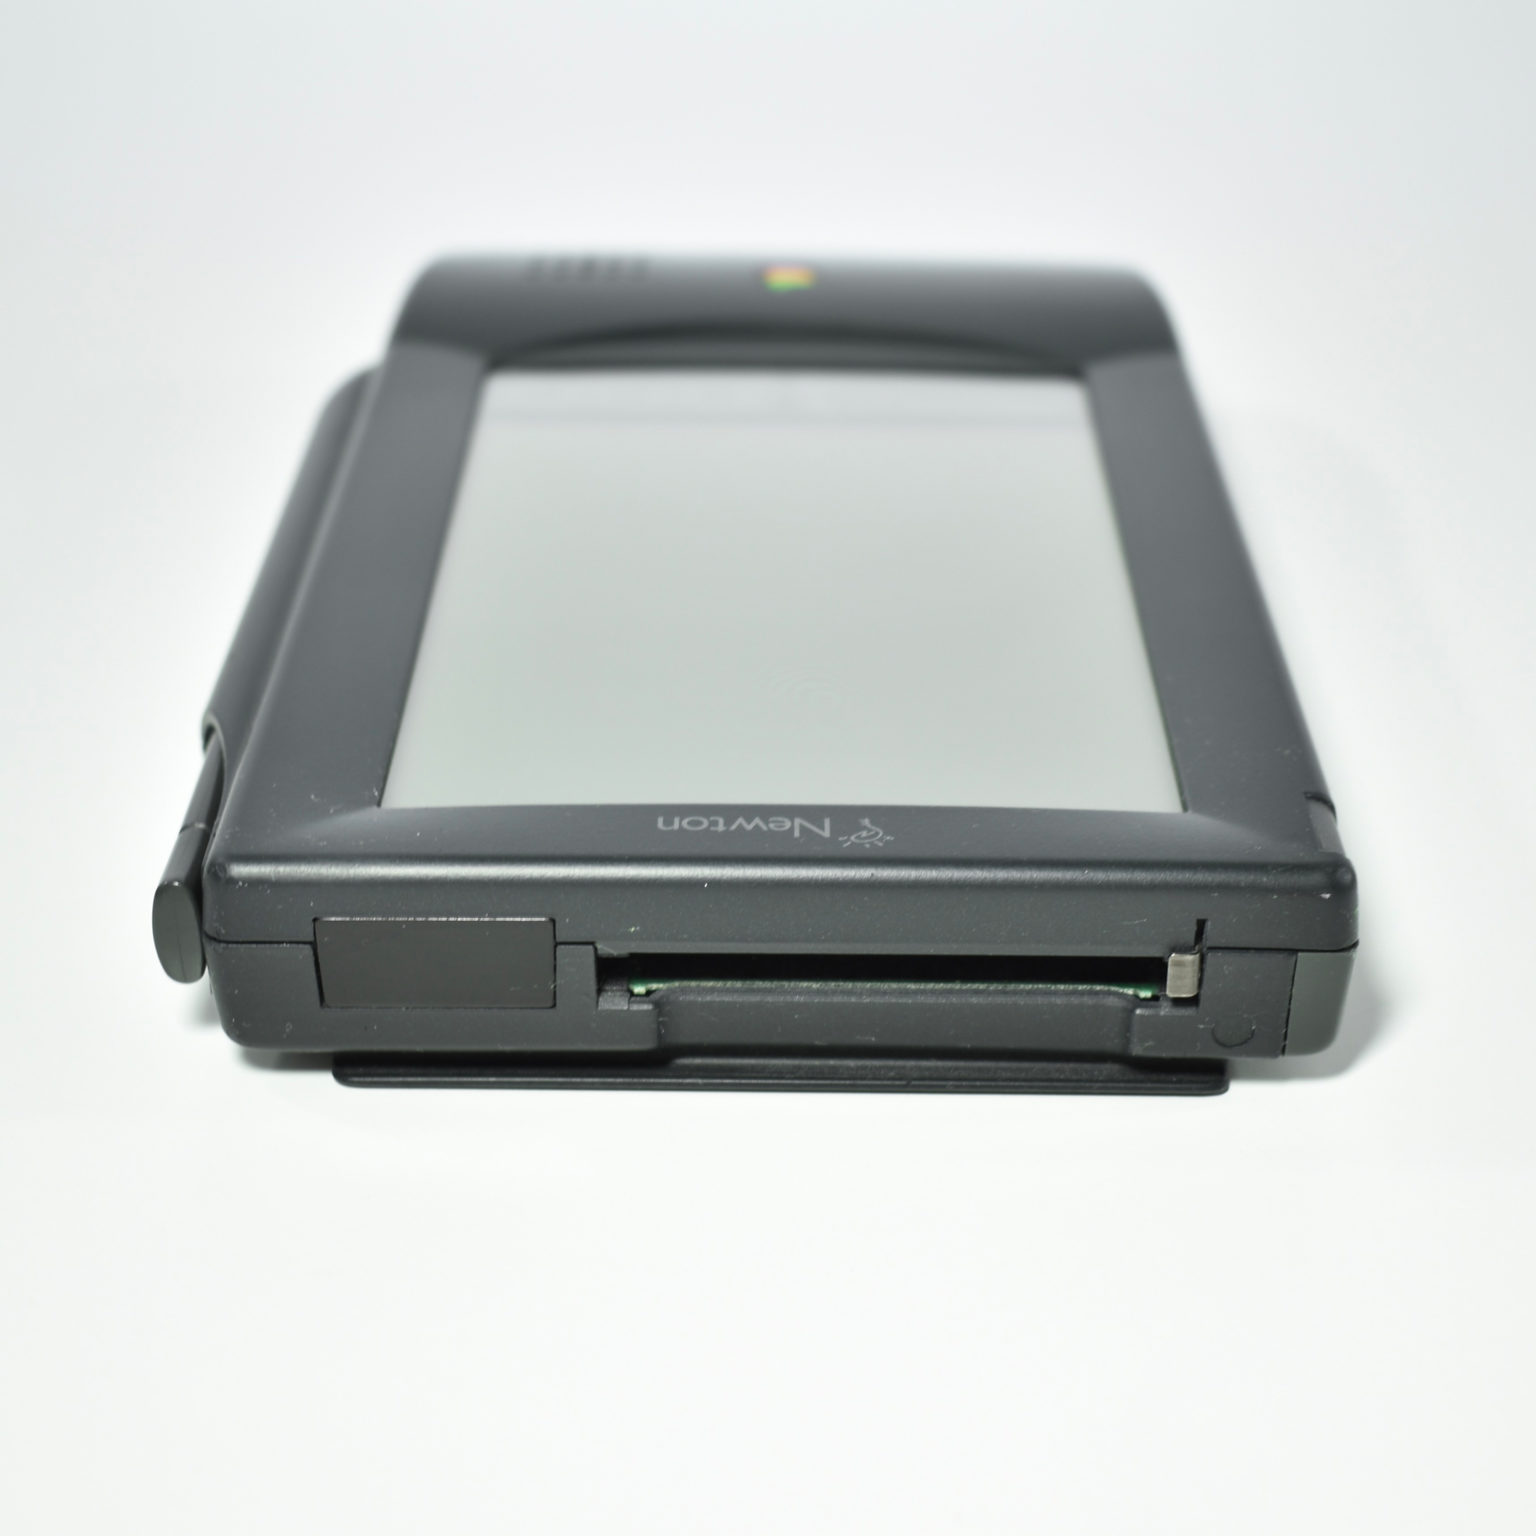 Newton MessagePad 100 (1993) – mattjfuller.com